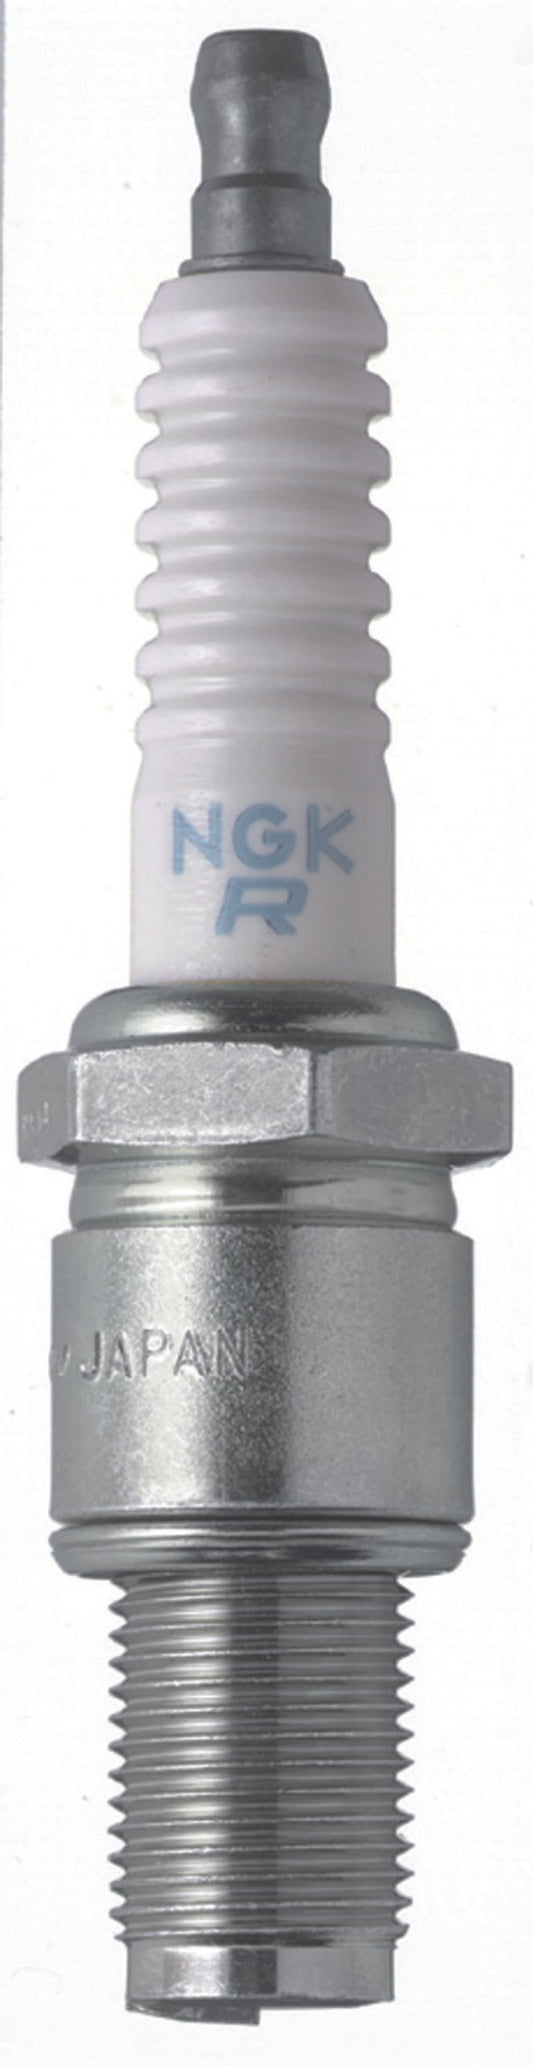 NGK - Racing Spark Plug Box of 4 (R6725-115)